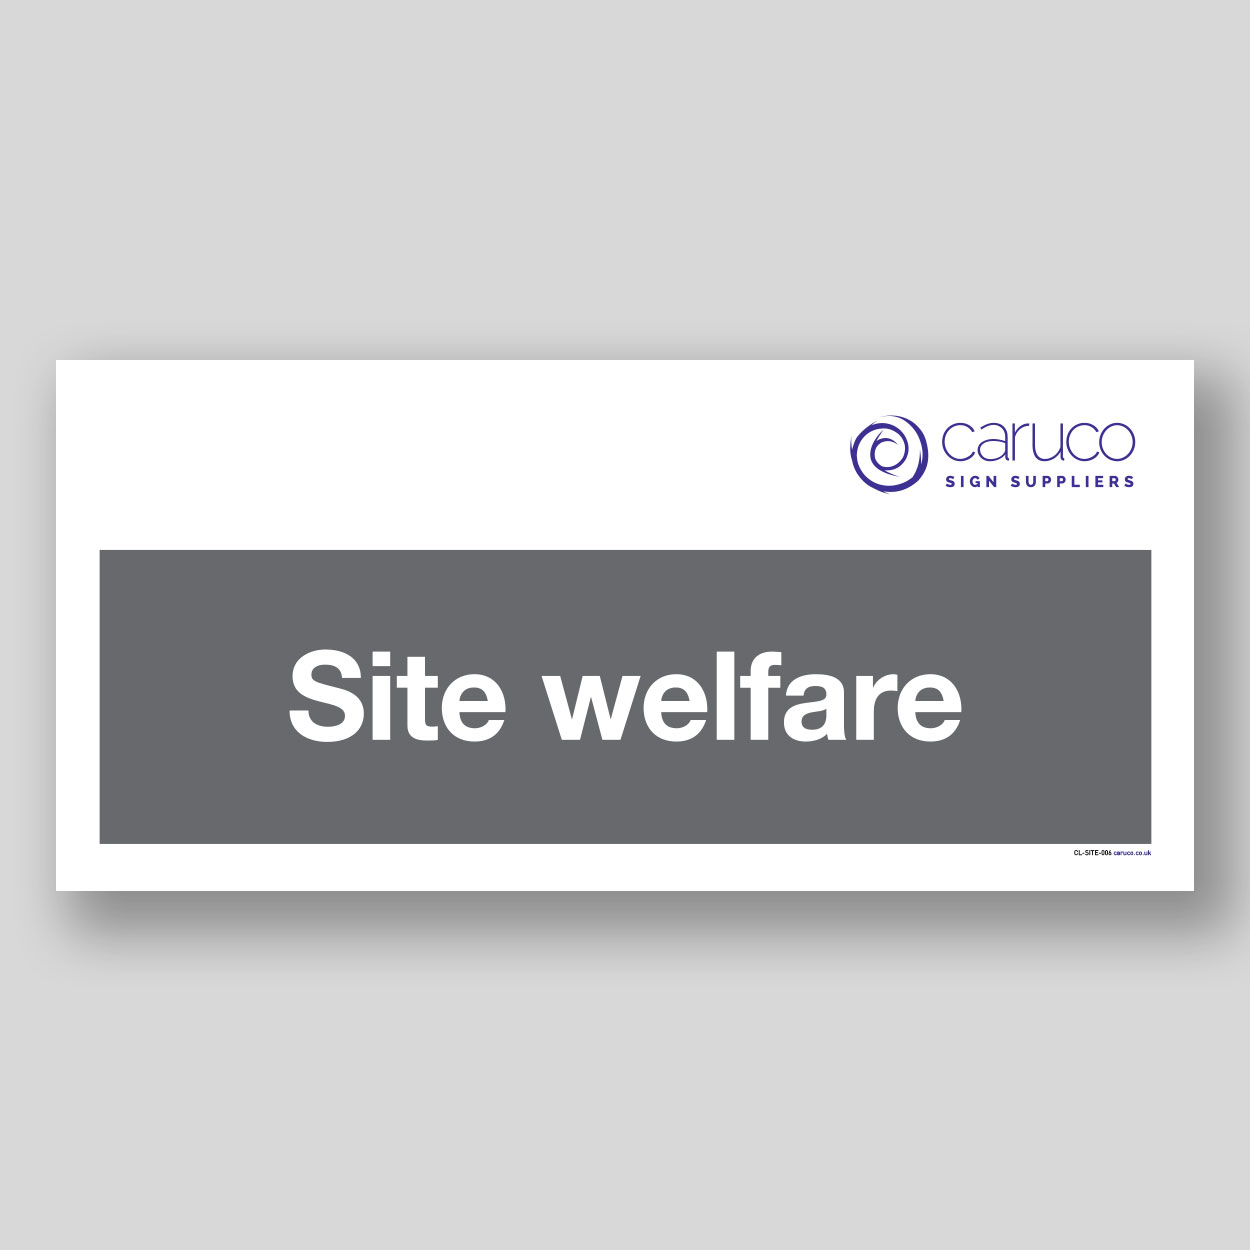 CL-SITE-006 Site welfare